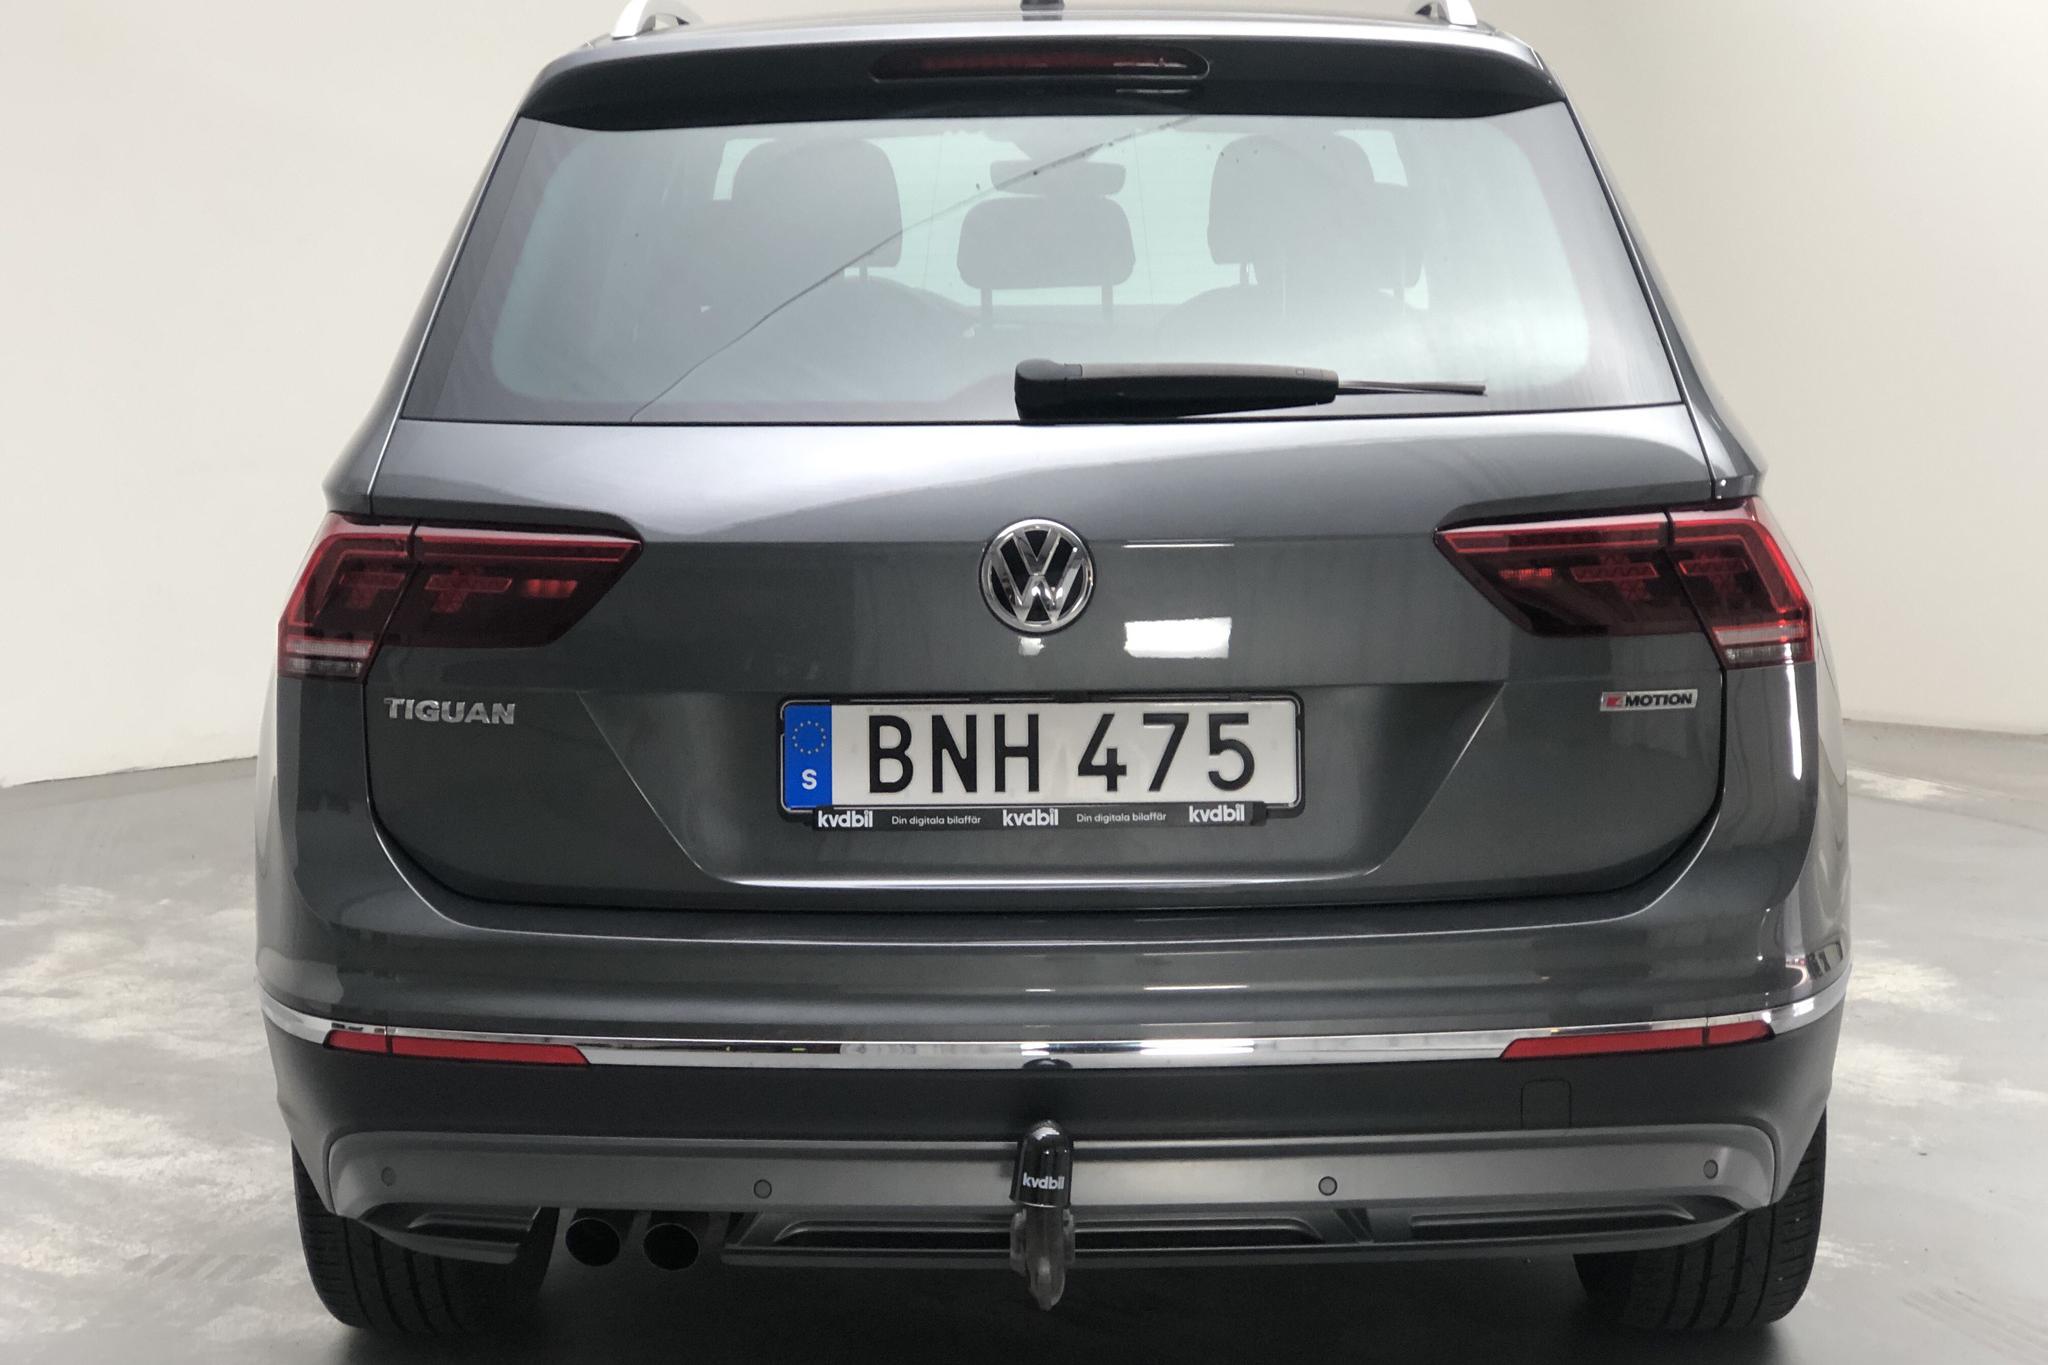 VW Tiguan 2.0 TDI 4MOTION (190hk) - 75 850 km - Automatic - gray - 2019